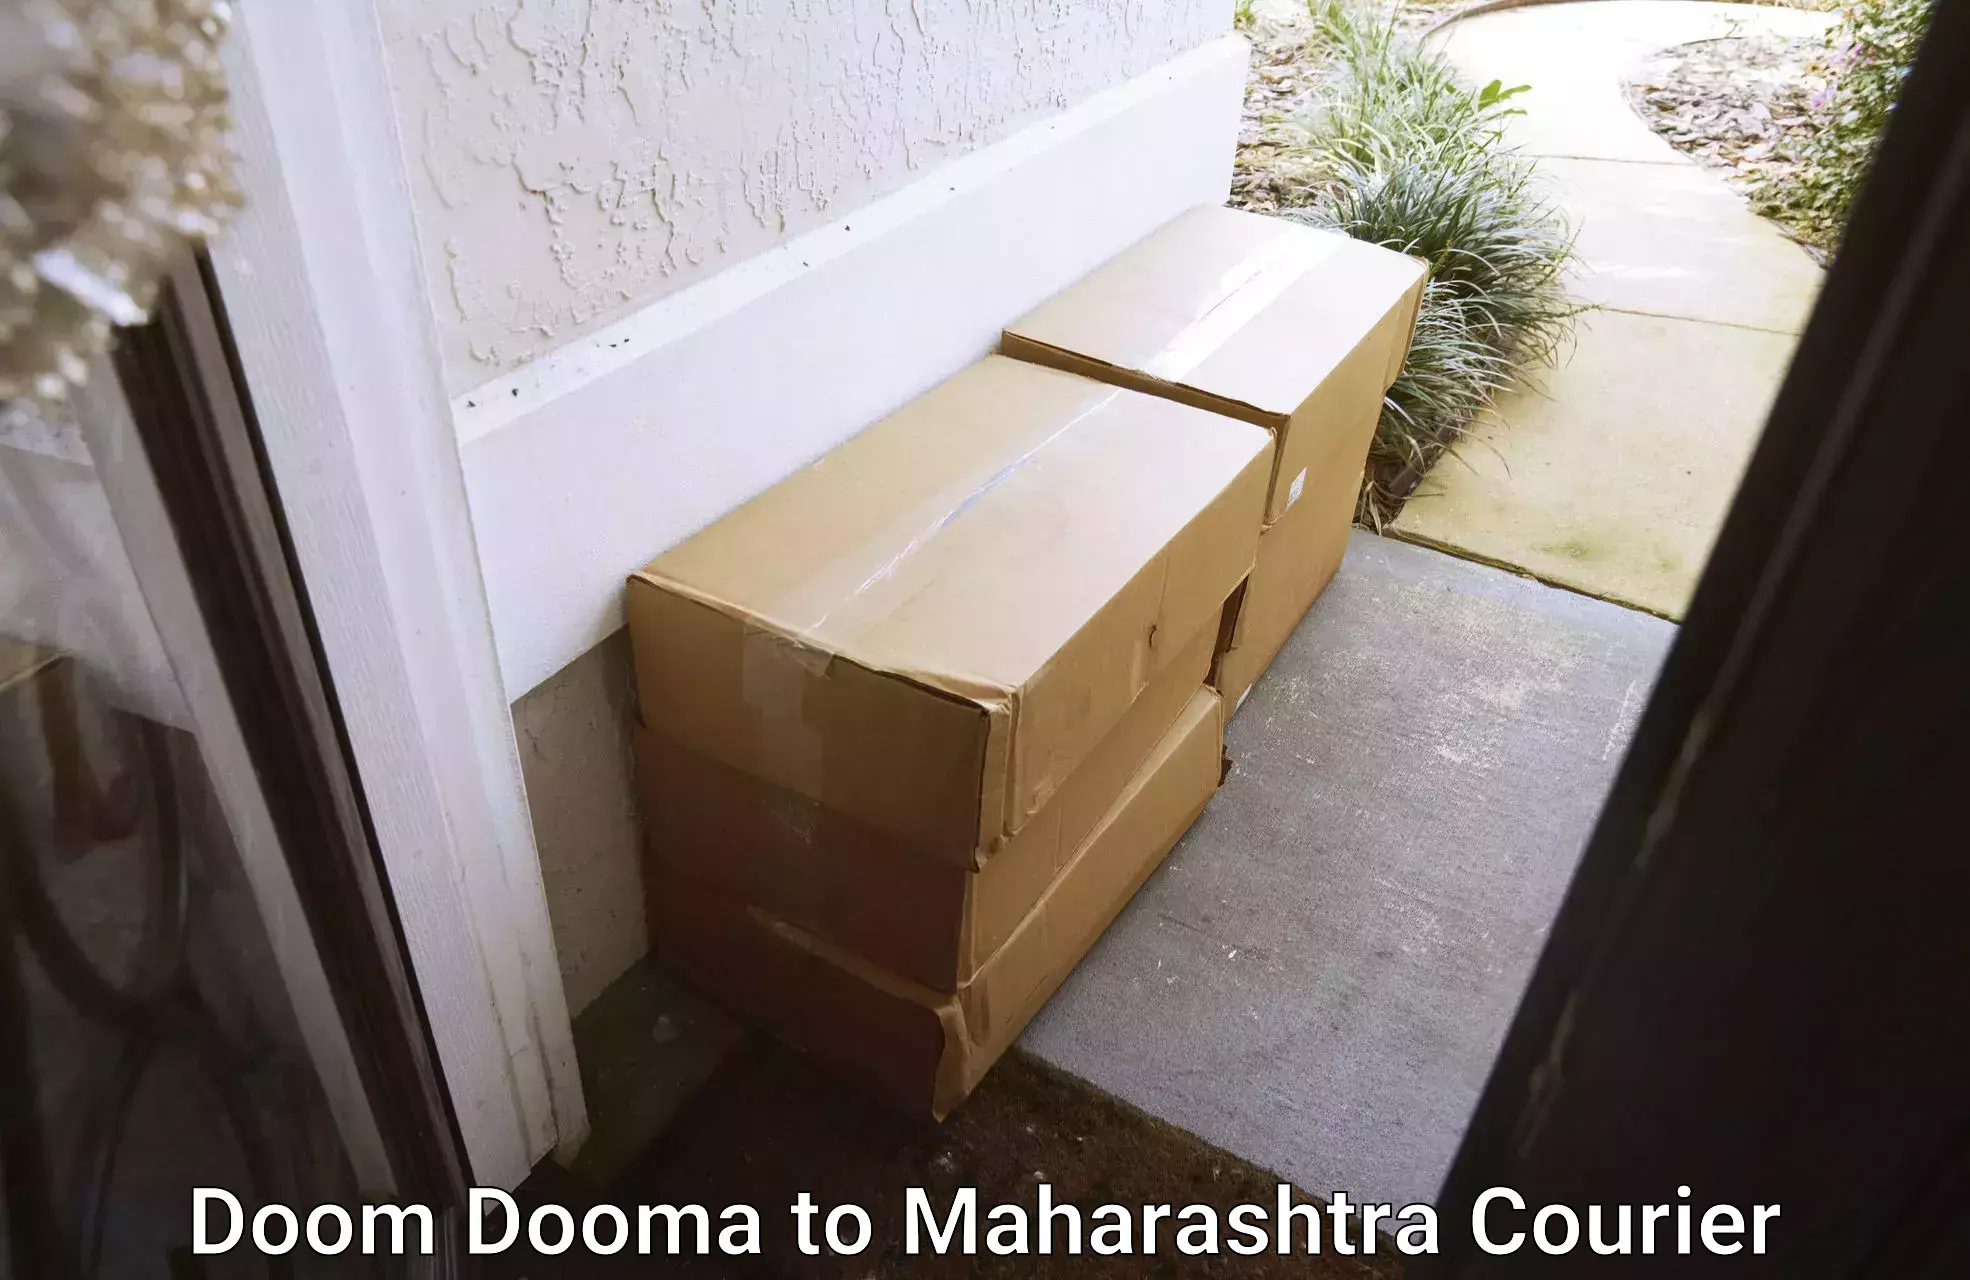 Courier dispatch services Doom Dooma to Mahim